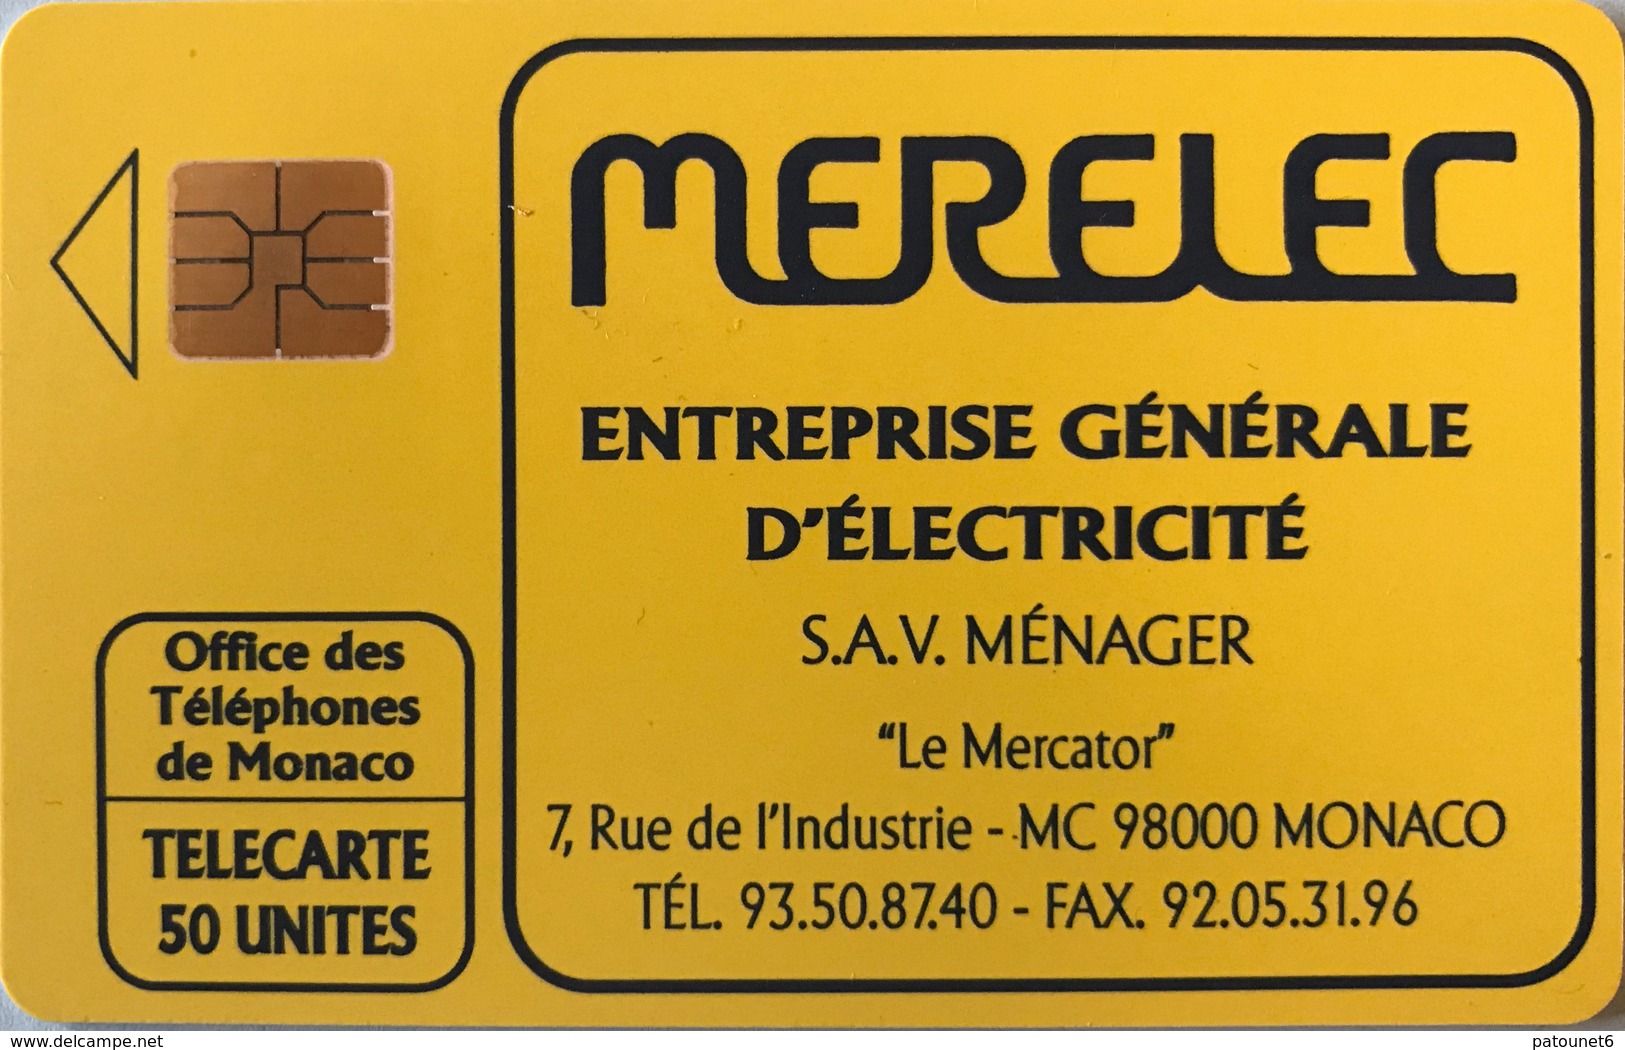 MONACO  -  Phonecard  -  MF 21  -  MERELEC Electricité  -  50 Unités - Monaco